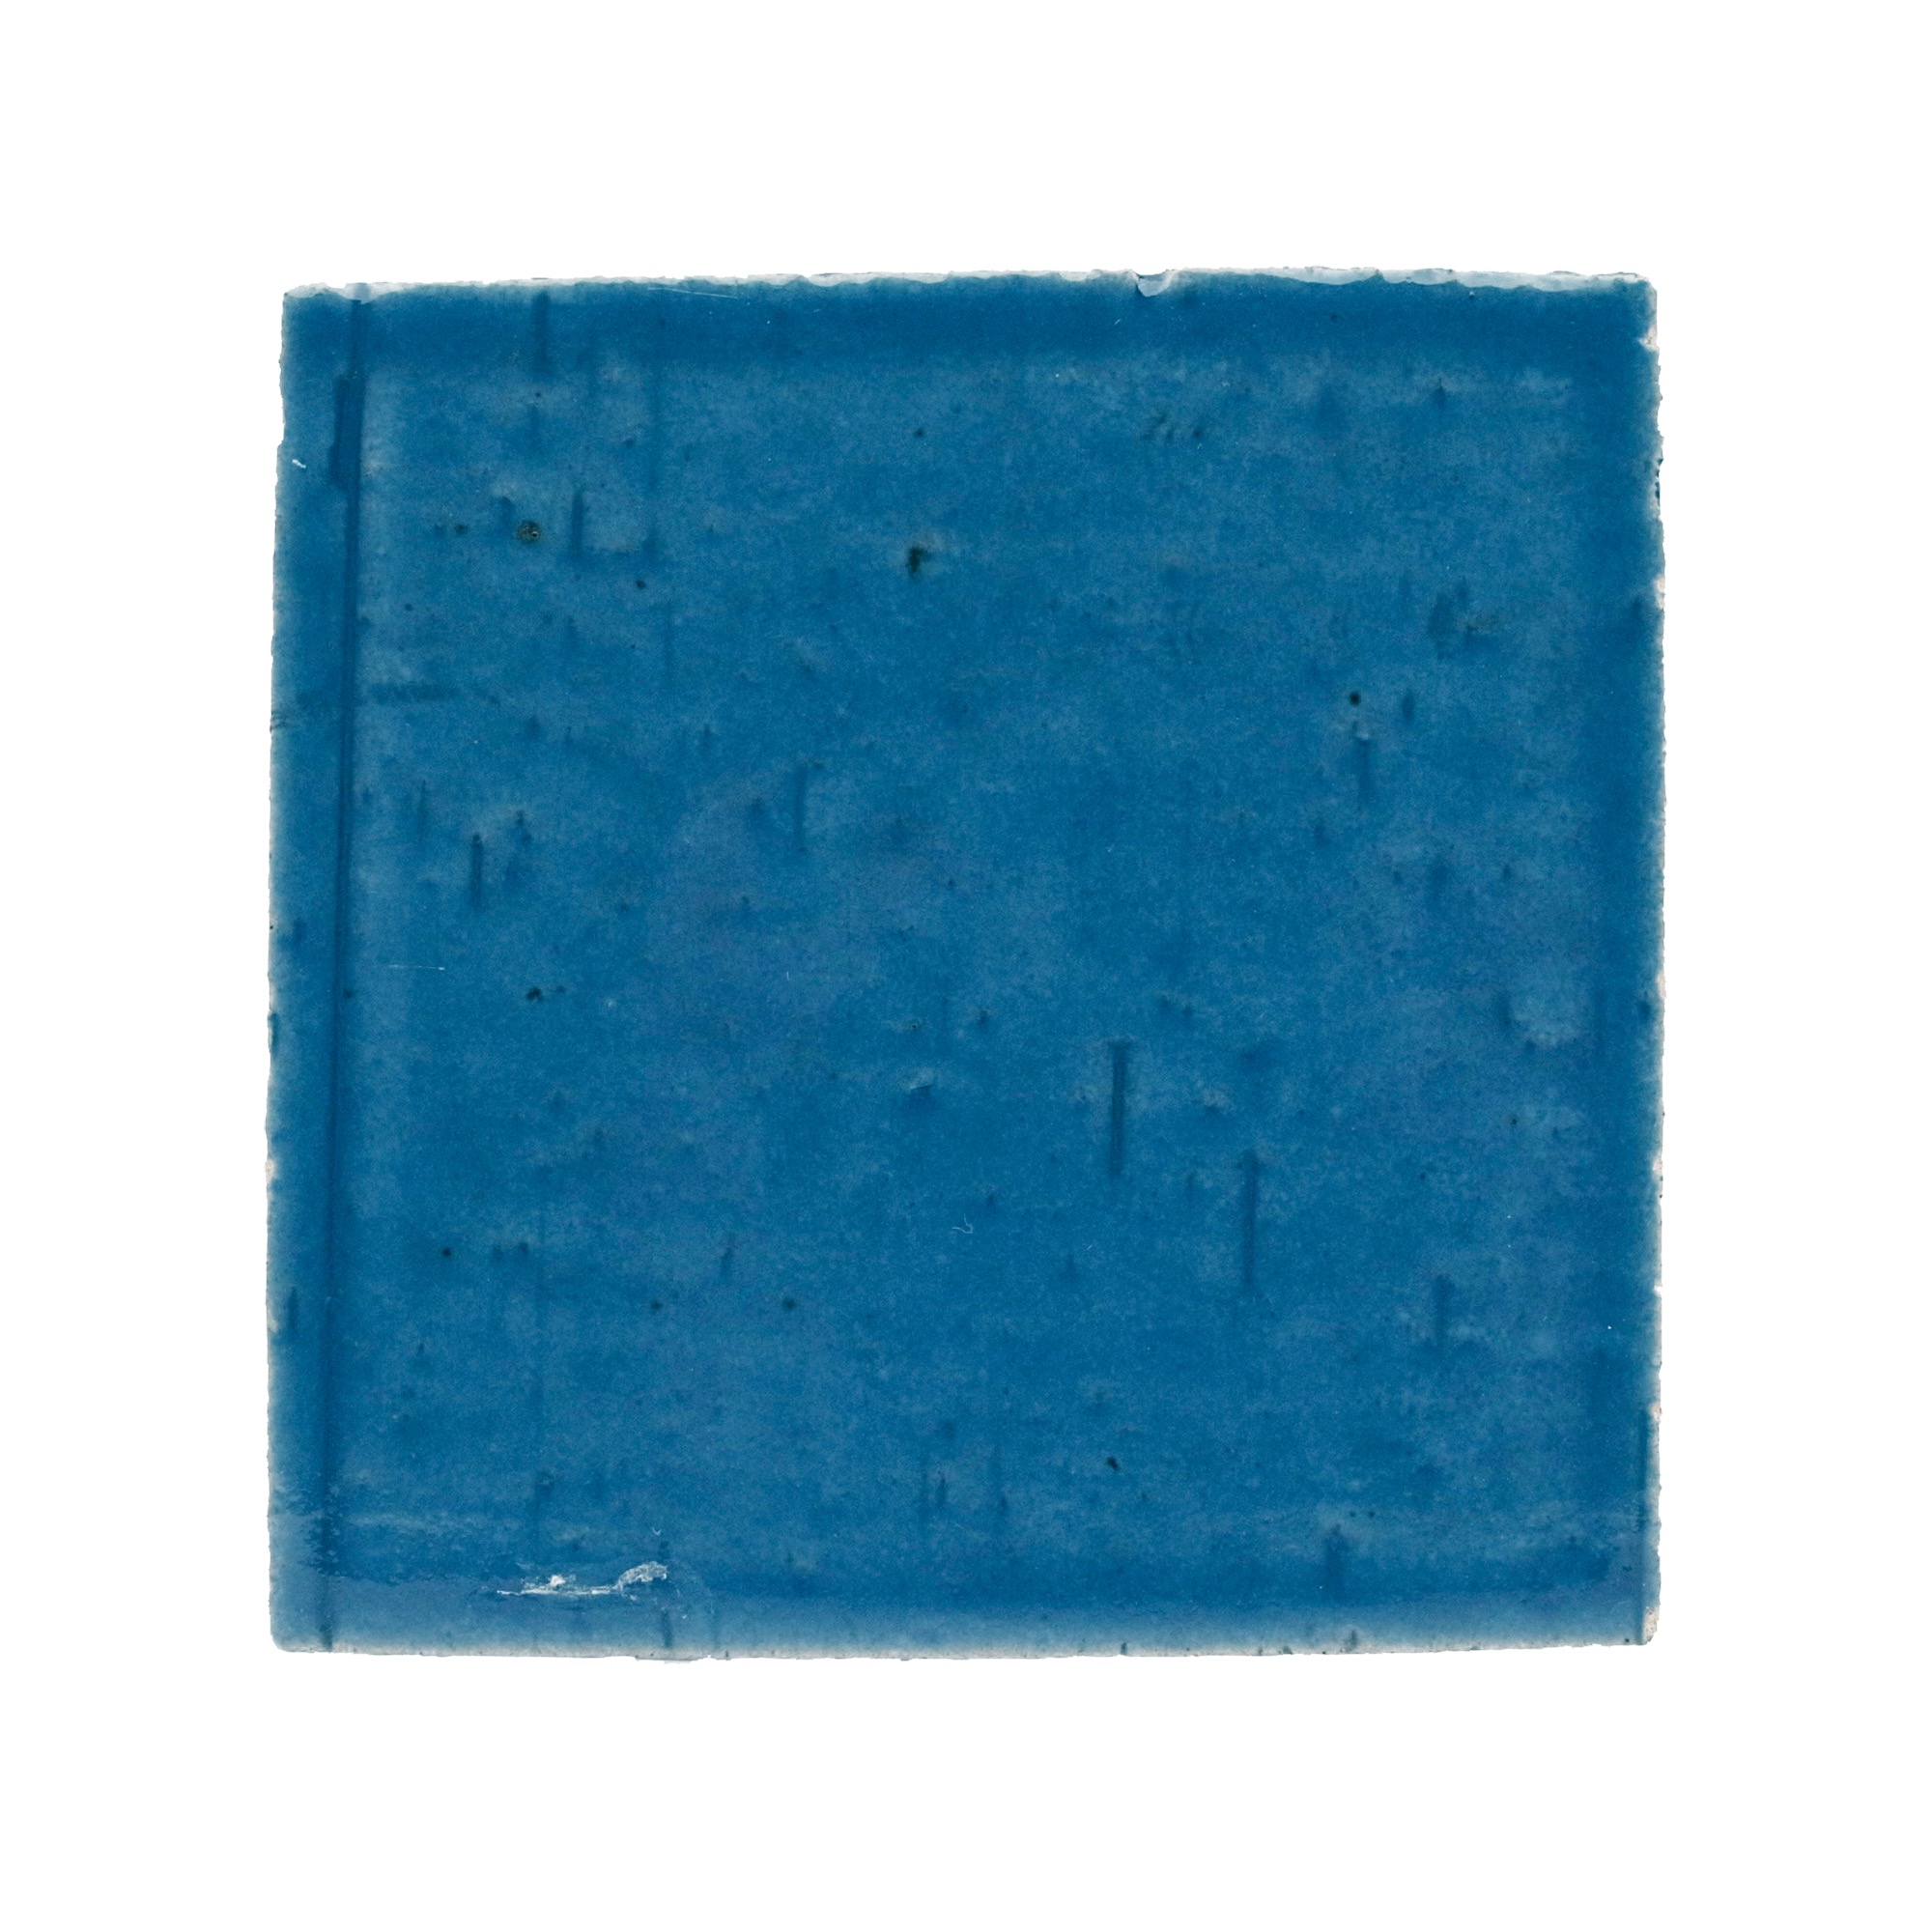 ラスティックタイル プレーン ブルー WL-TL011-01D-G141